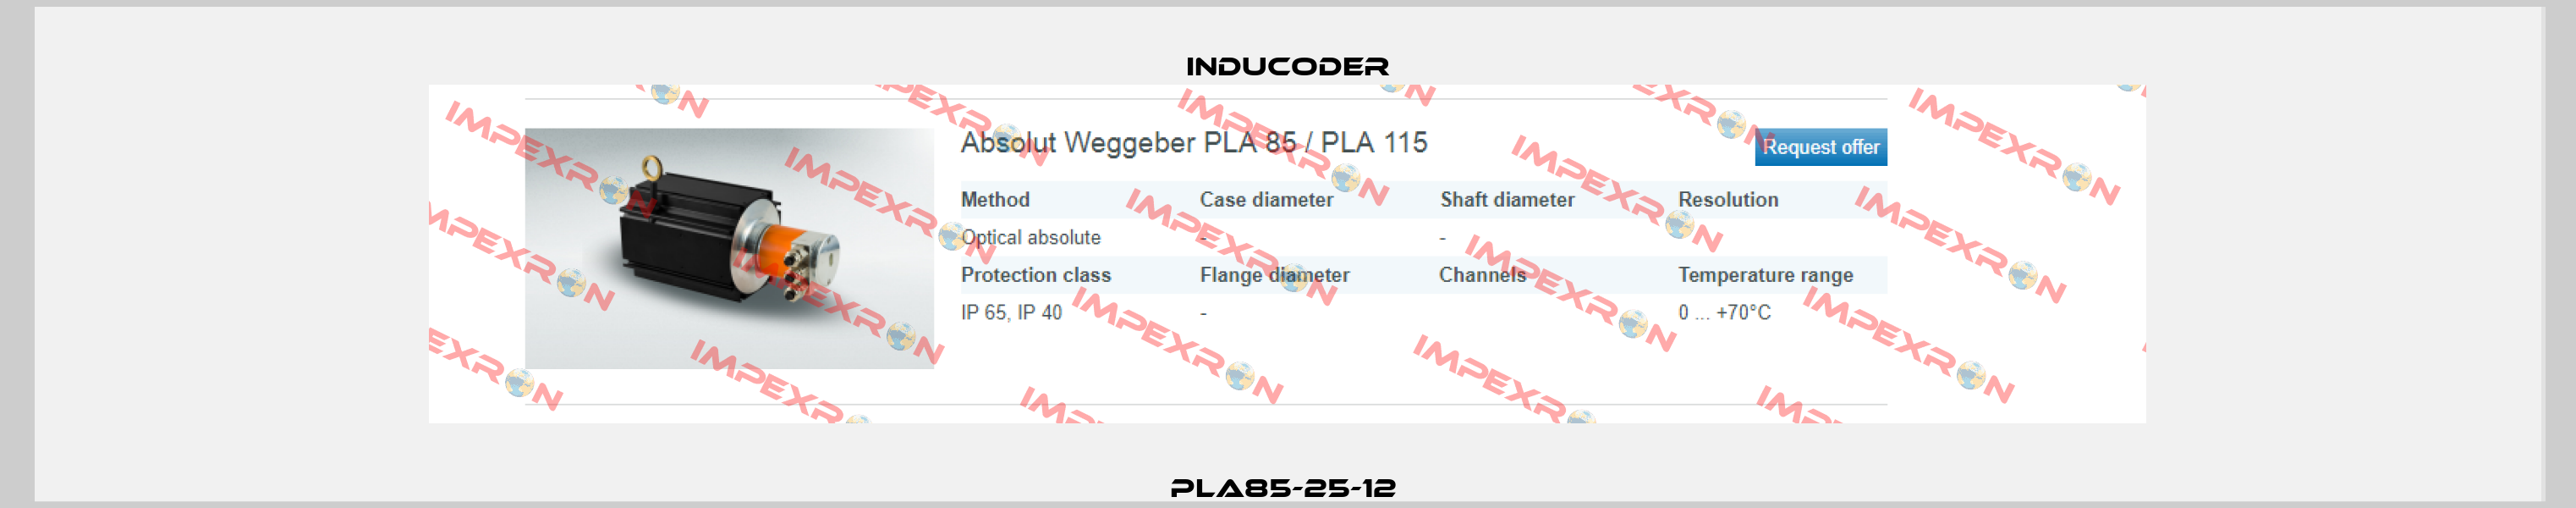 PLA85-25-12  Inducoder